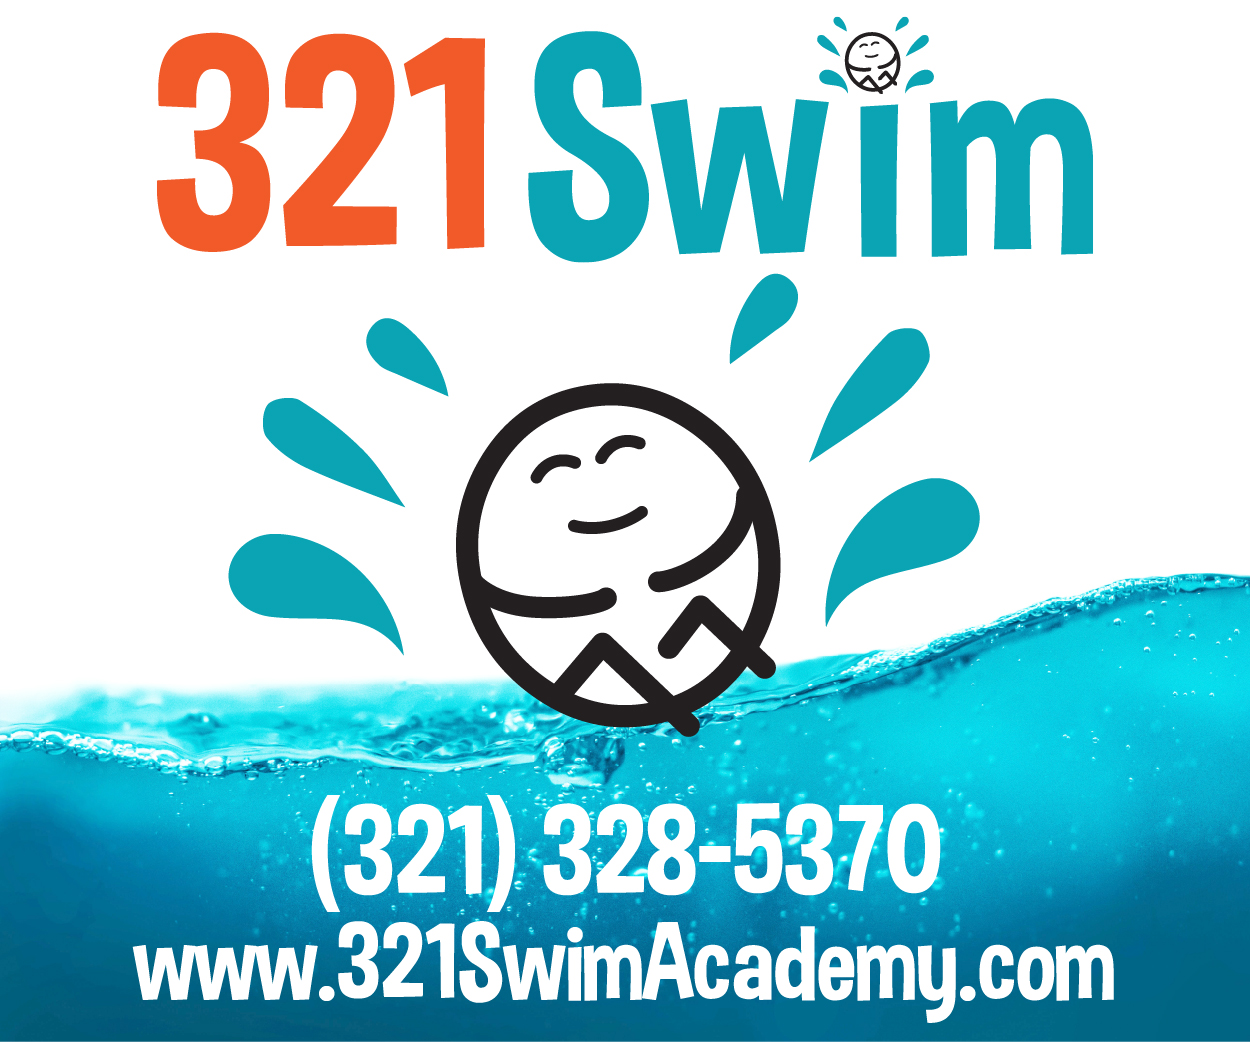 321 Swim Academy